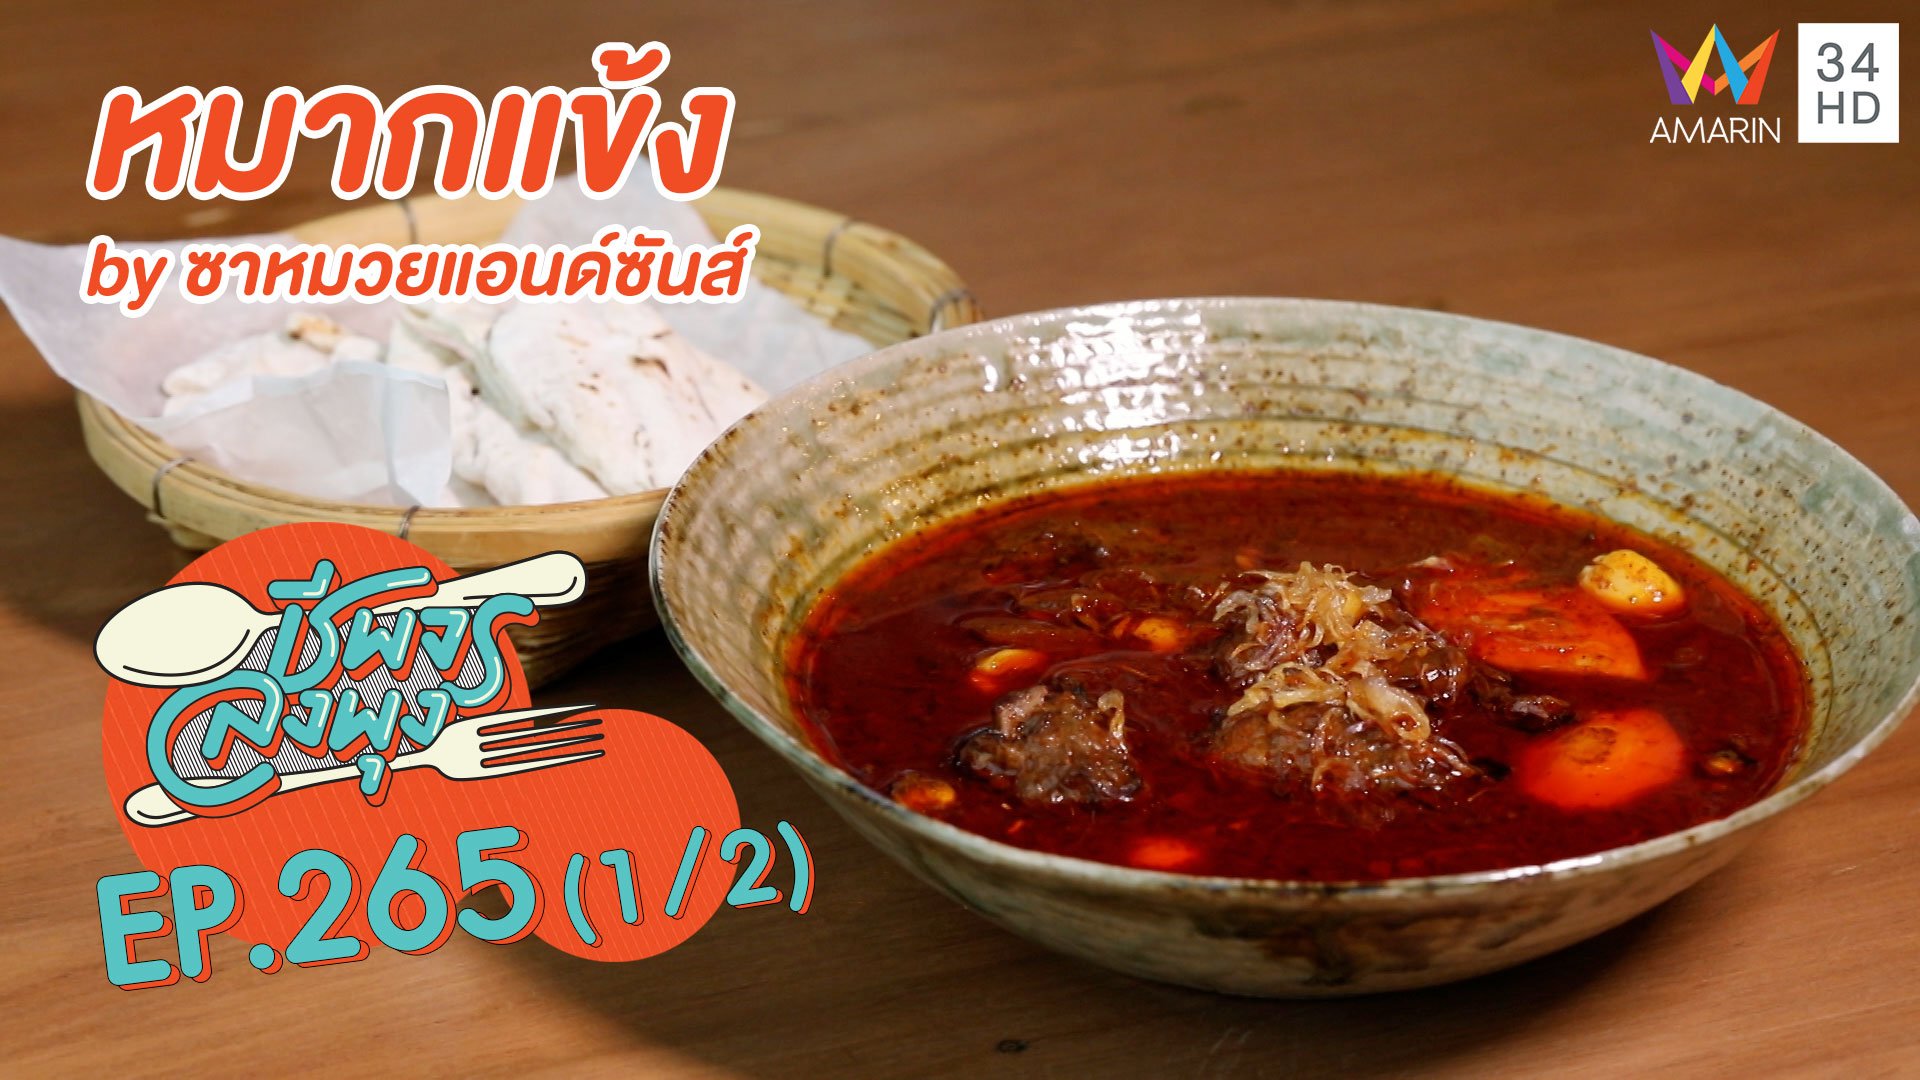 ทีเด็ดอาหารไทย 'หมากแข้ง by ซาหมวยแอนด์ซันส์' | ชีพจรลงพุง | 20 ธ.ค. 63 (1/2) | AMARIN TVHD34